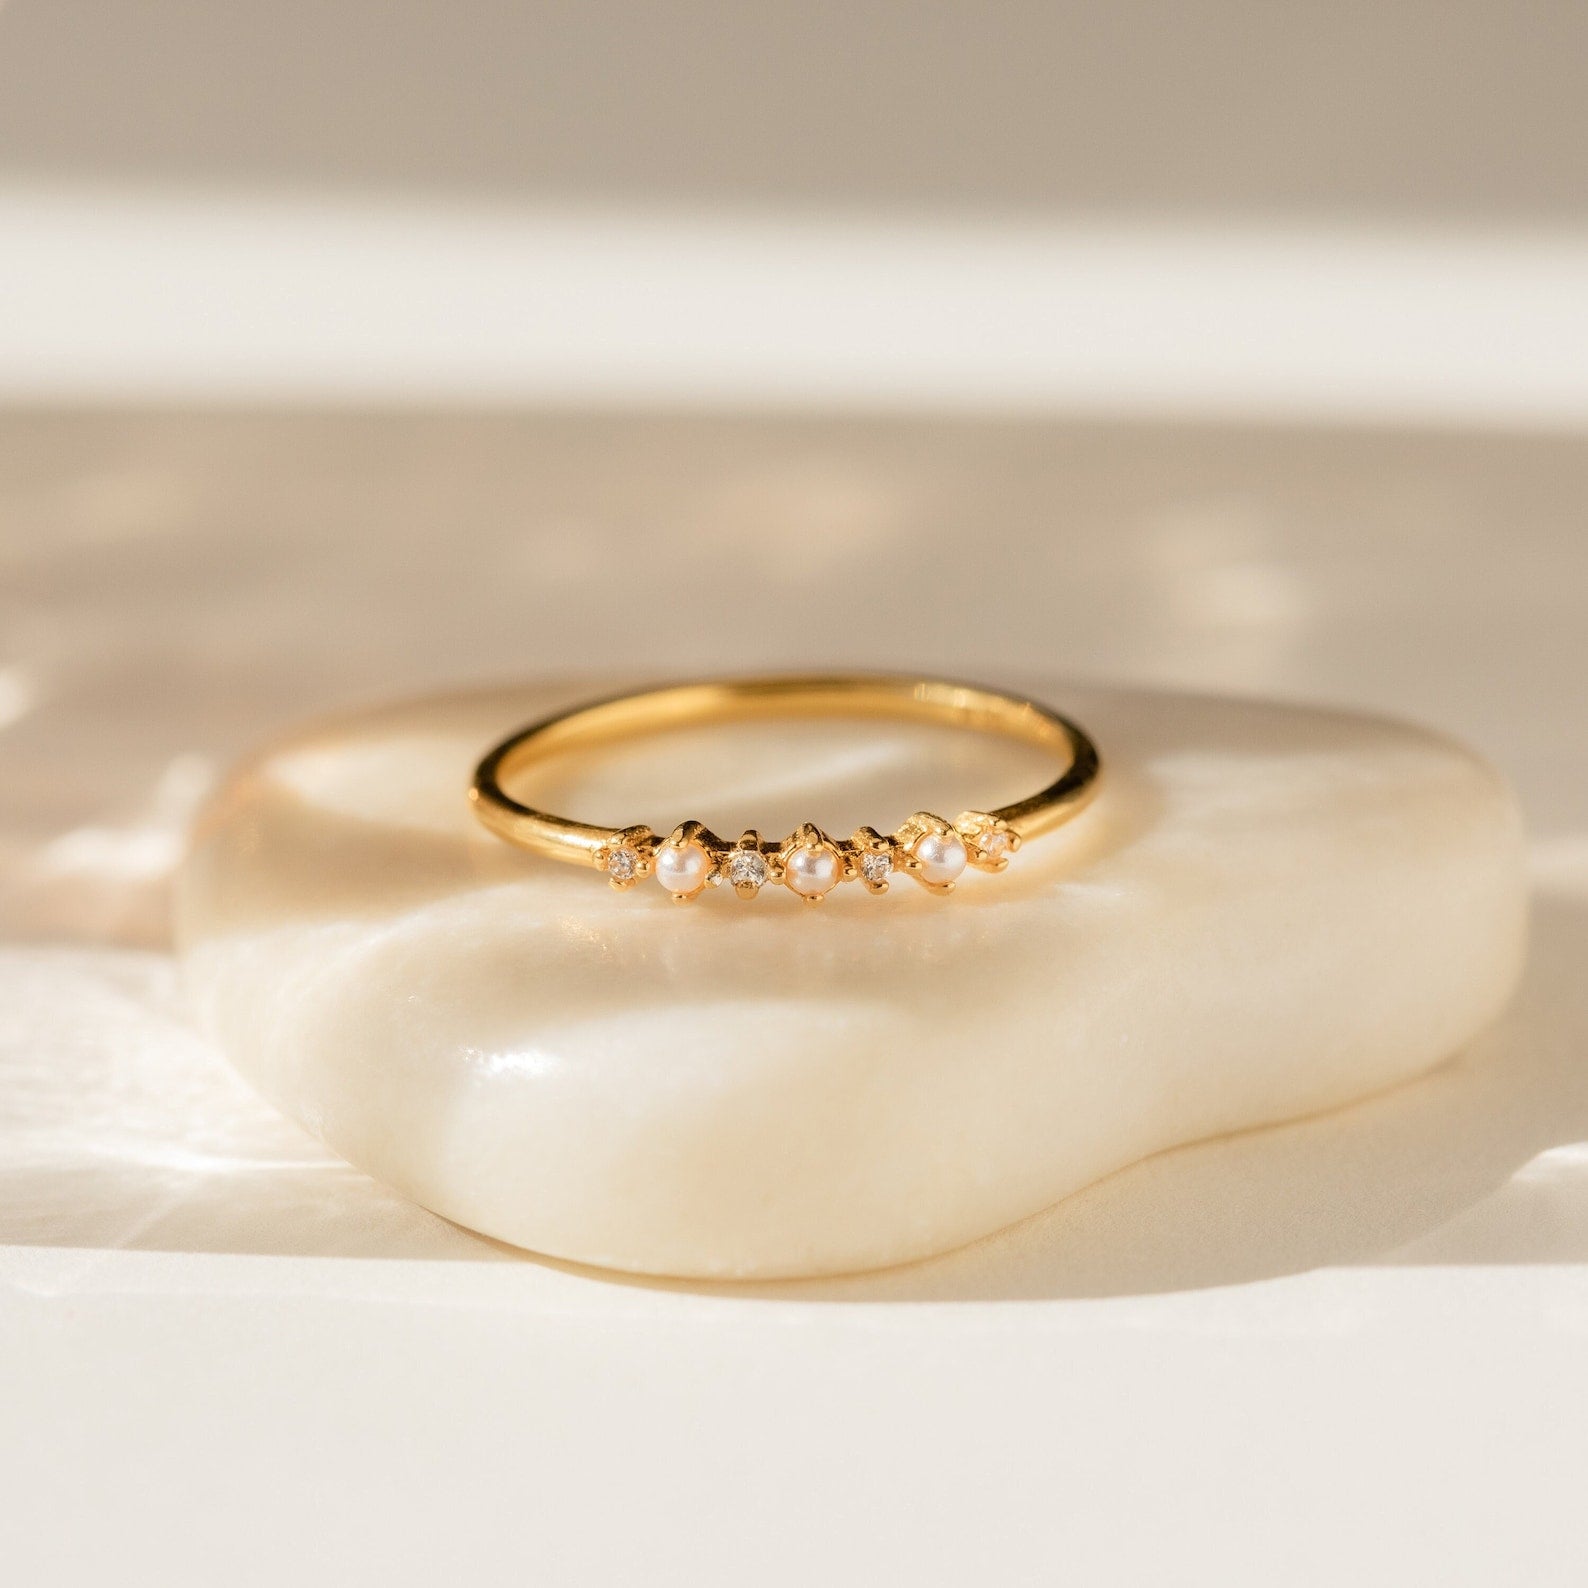 Wedding Rings - Wedding Rings Designs / Marriage Rings online at Best  Prices in India | Flipkart.com